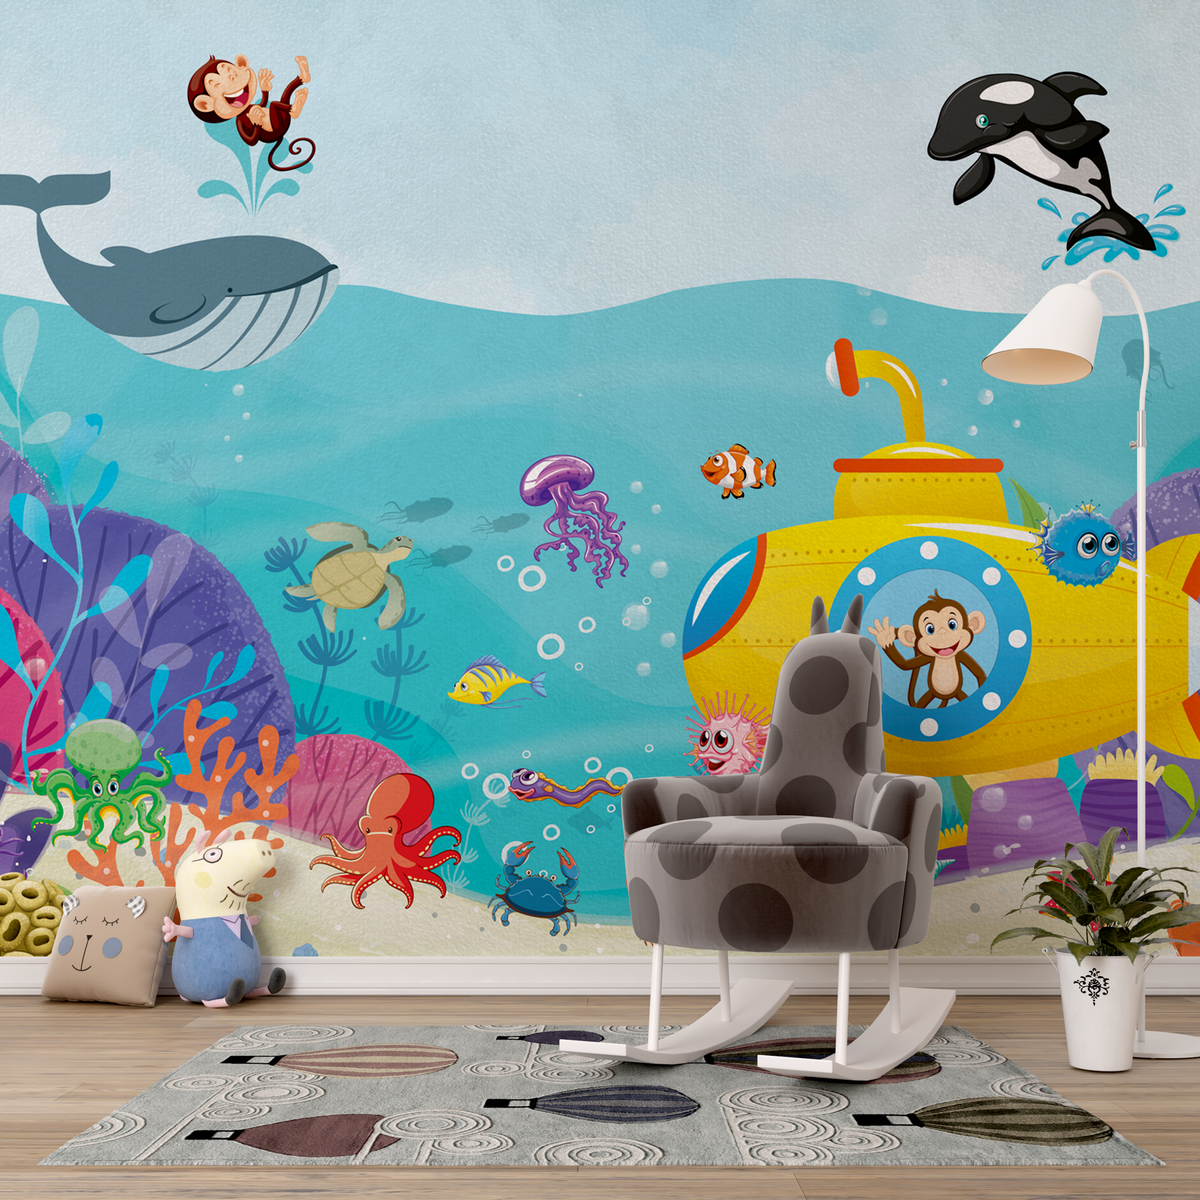 Ocean Creatures Party - Kids Room Wallpaper Mural-ChandeliersDecor